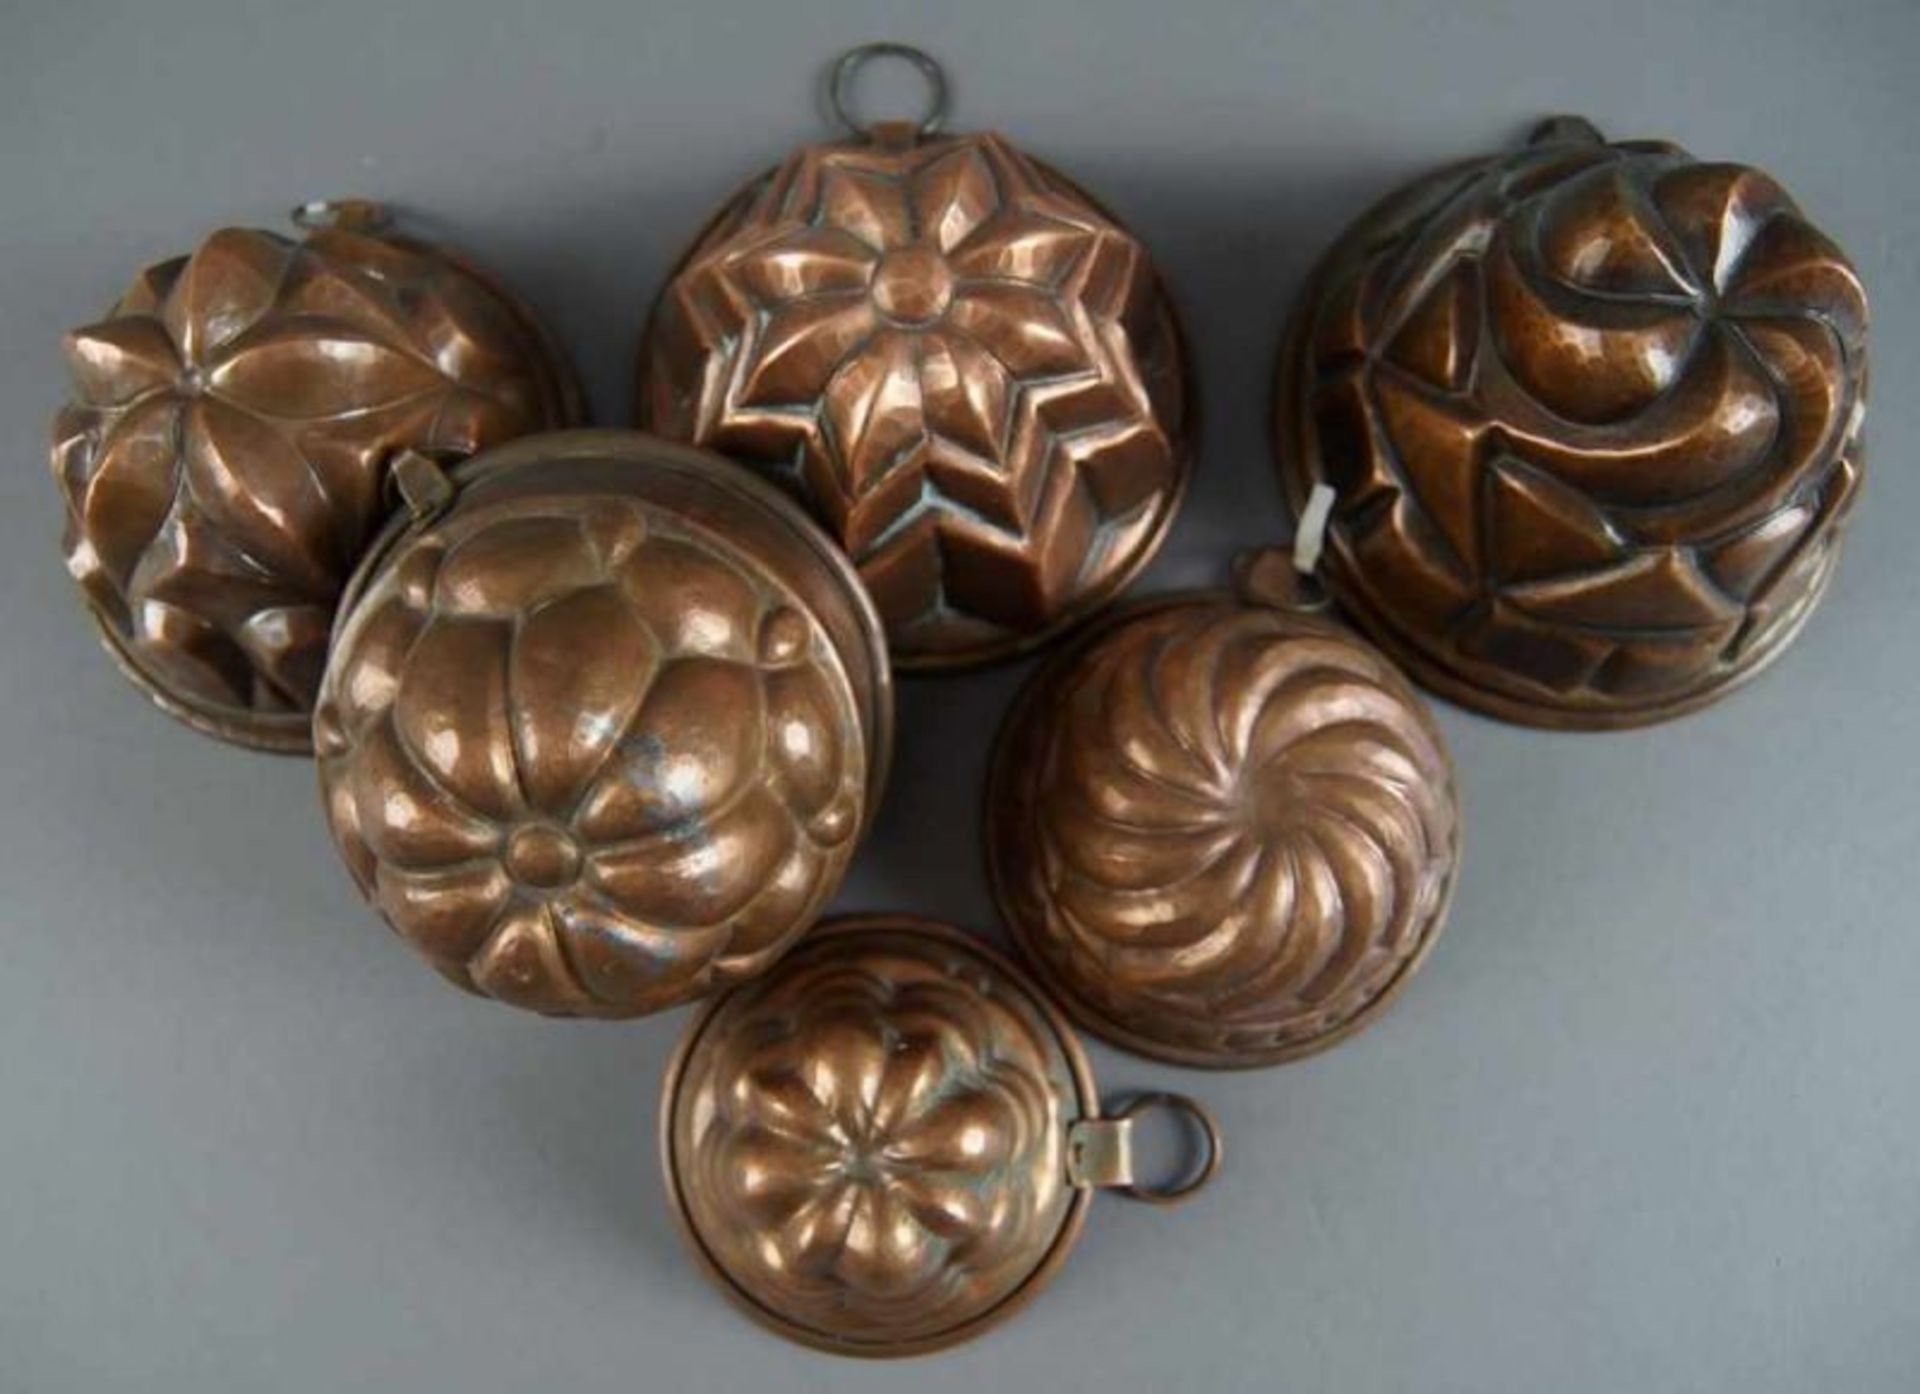 Sechs Miniatur - Guglhupf/Kuchenformen aus Kupfer, Durchmesser von 8 - 13 cm 20.17 % buyer's premium - Bild 4 aus 5